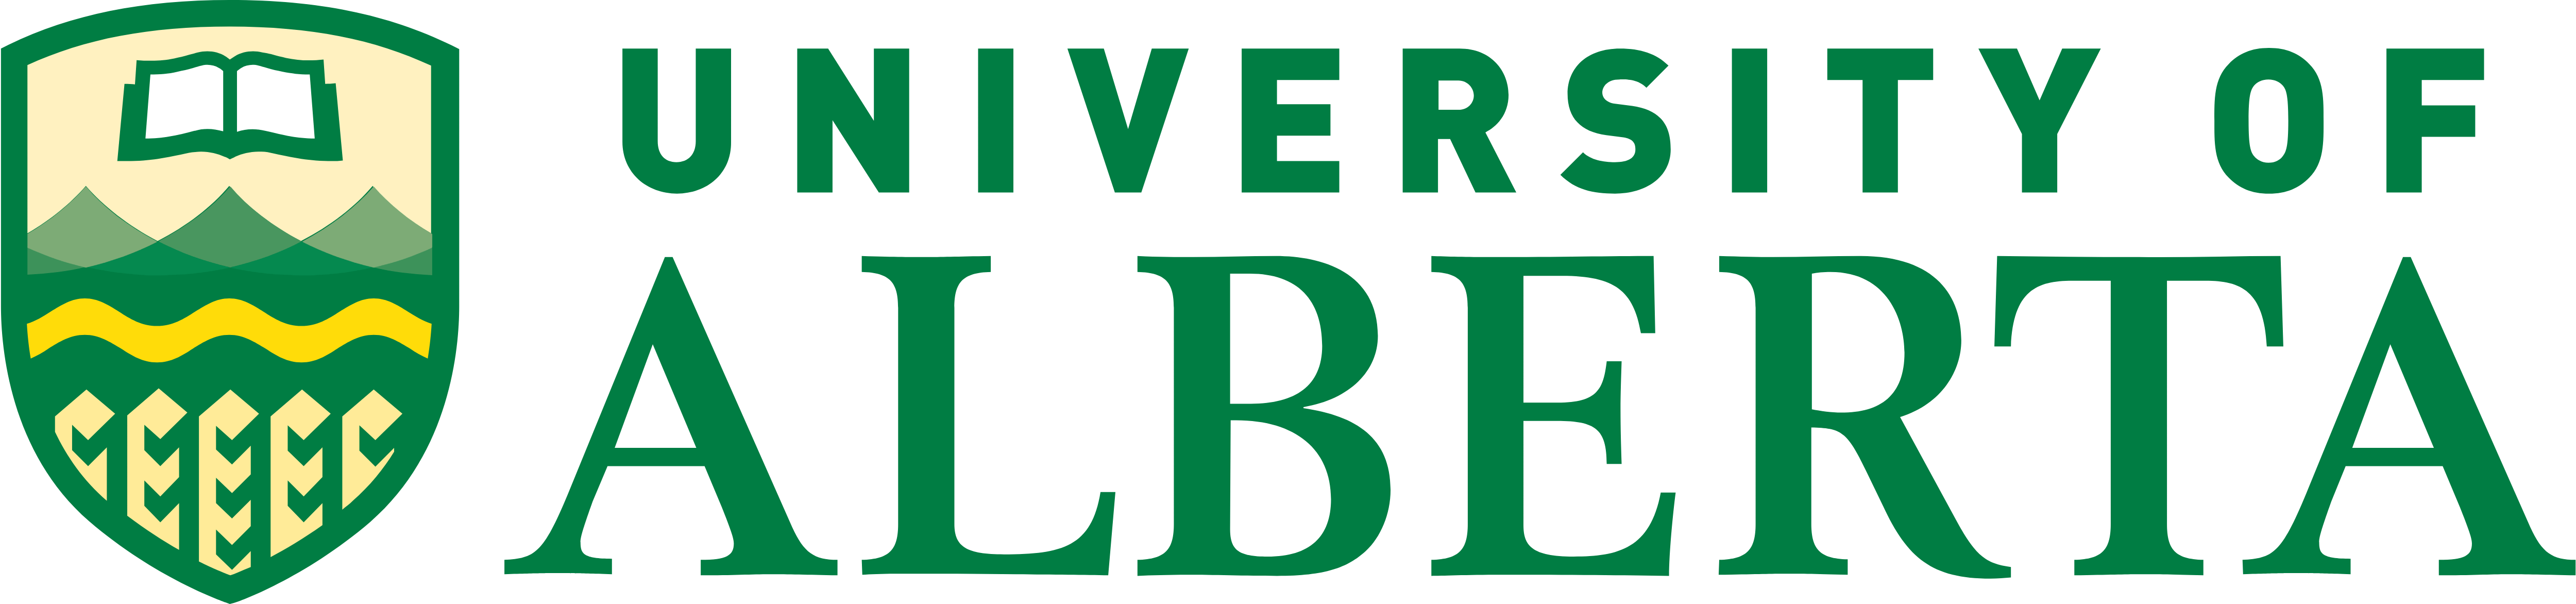 Alberta Logo - University of Alberta – Logos Download